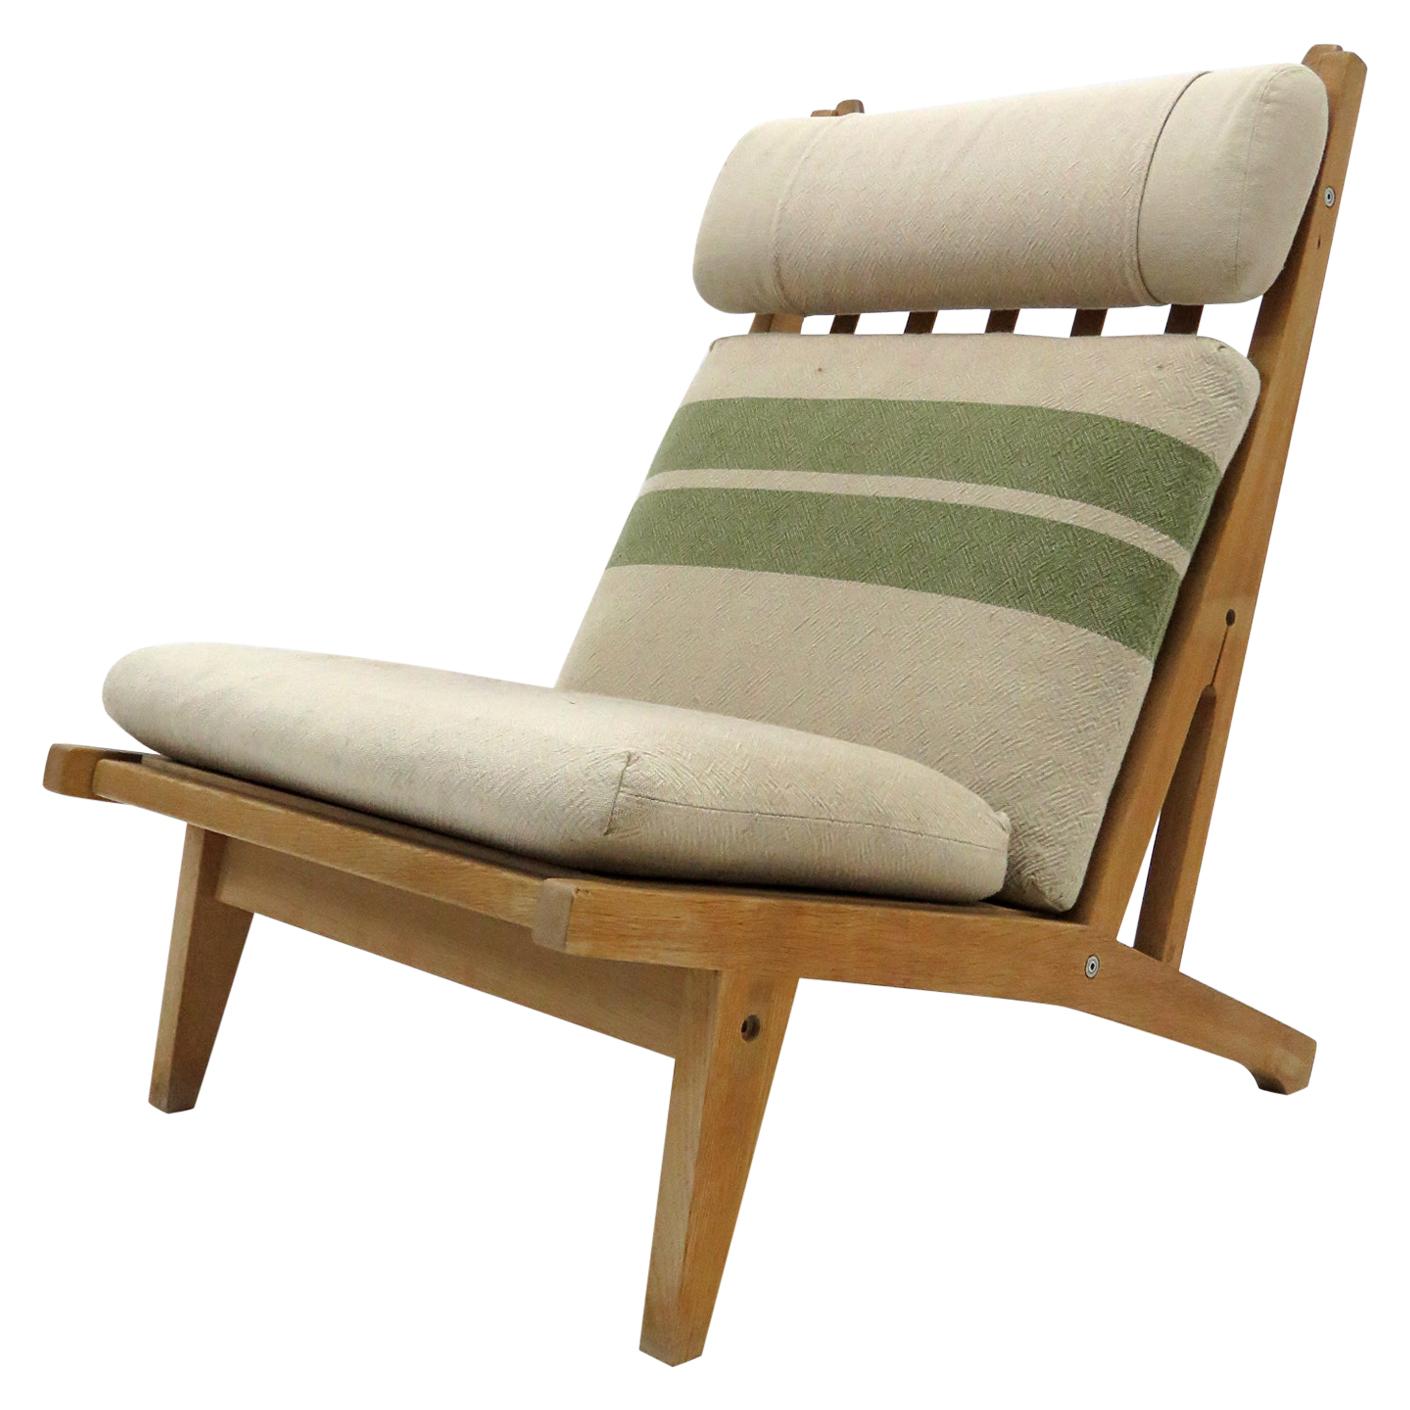 Hans Wegner High Back Lounge Chair, Model GE-375